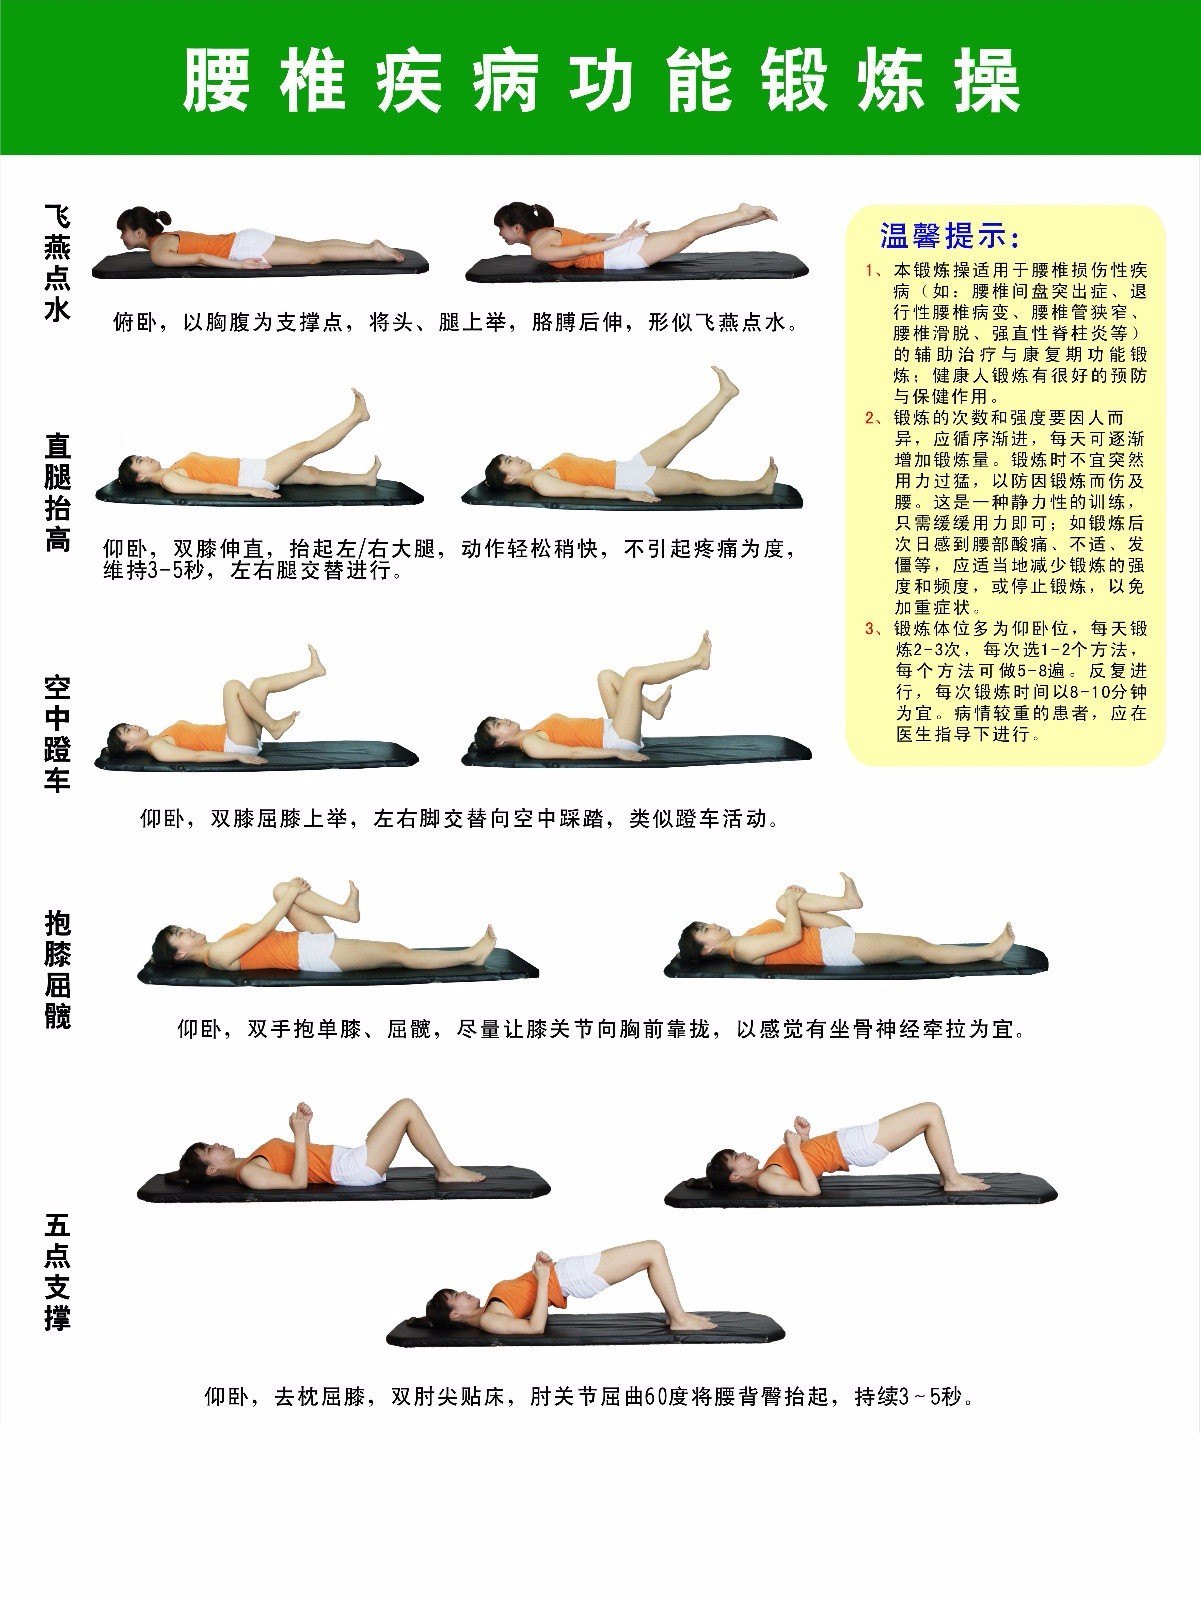 腰背肌的锻炼(可参考南方医院脊柱骨科出版的《颈部及腰背肌锻炼(颈椎